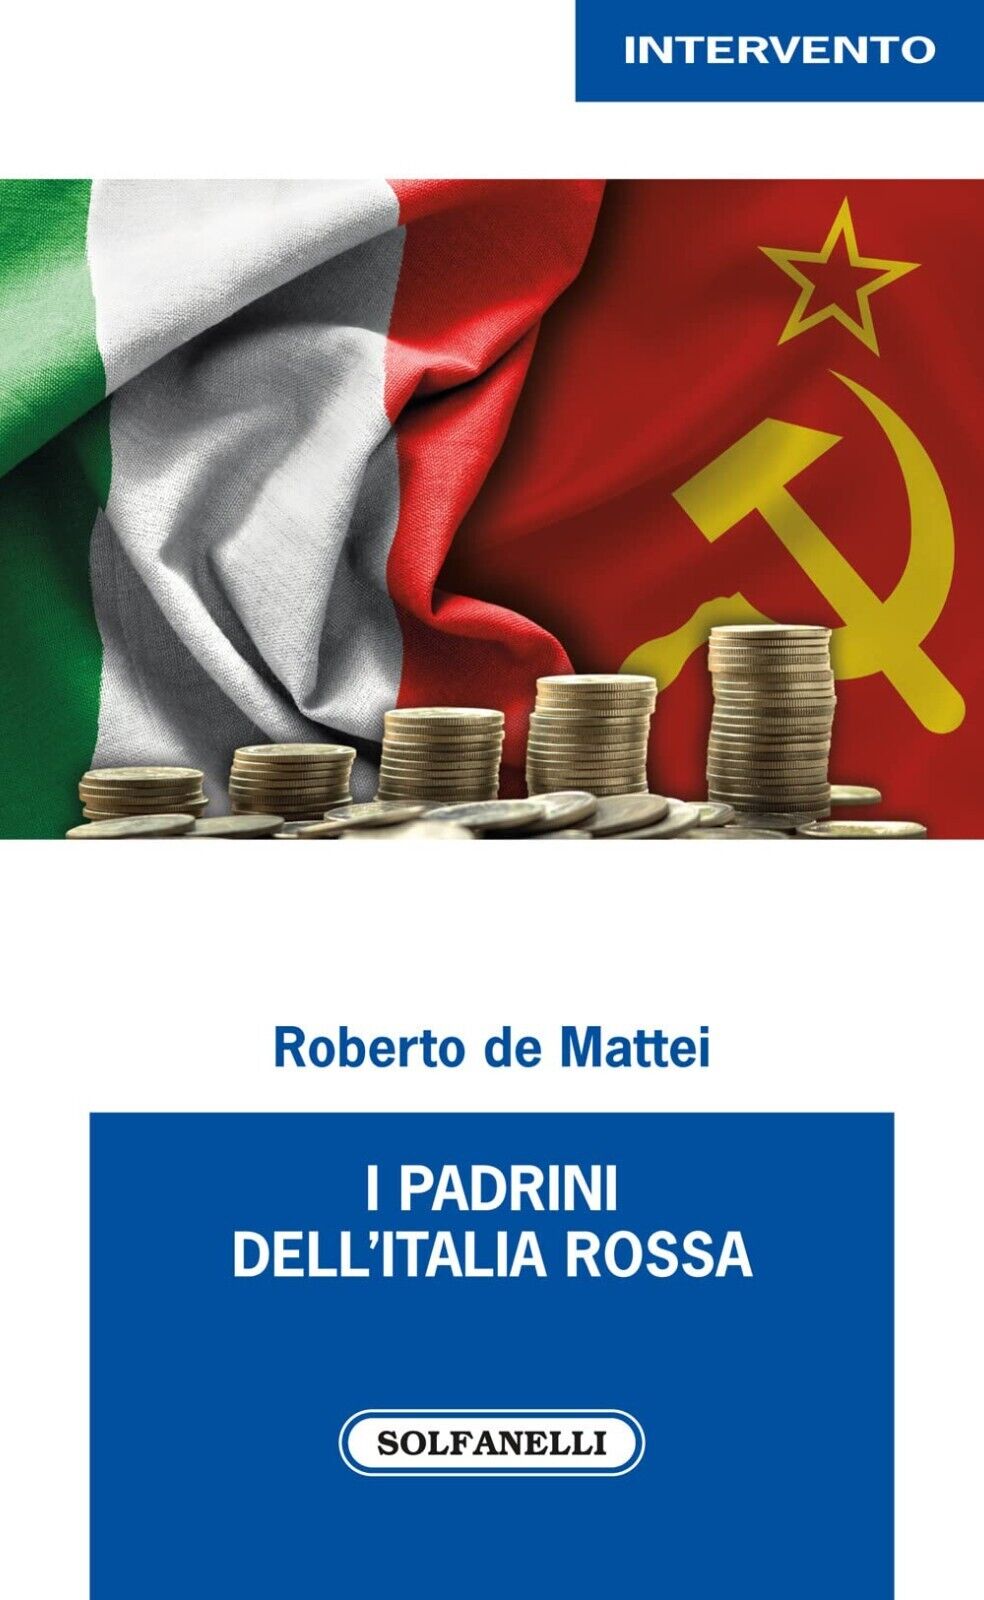  I PADRINI DELL'ITALIA ROSSA di Roberto De Mattei, 2022, Solfanelli